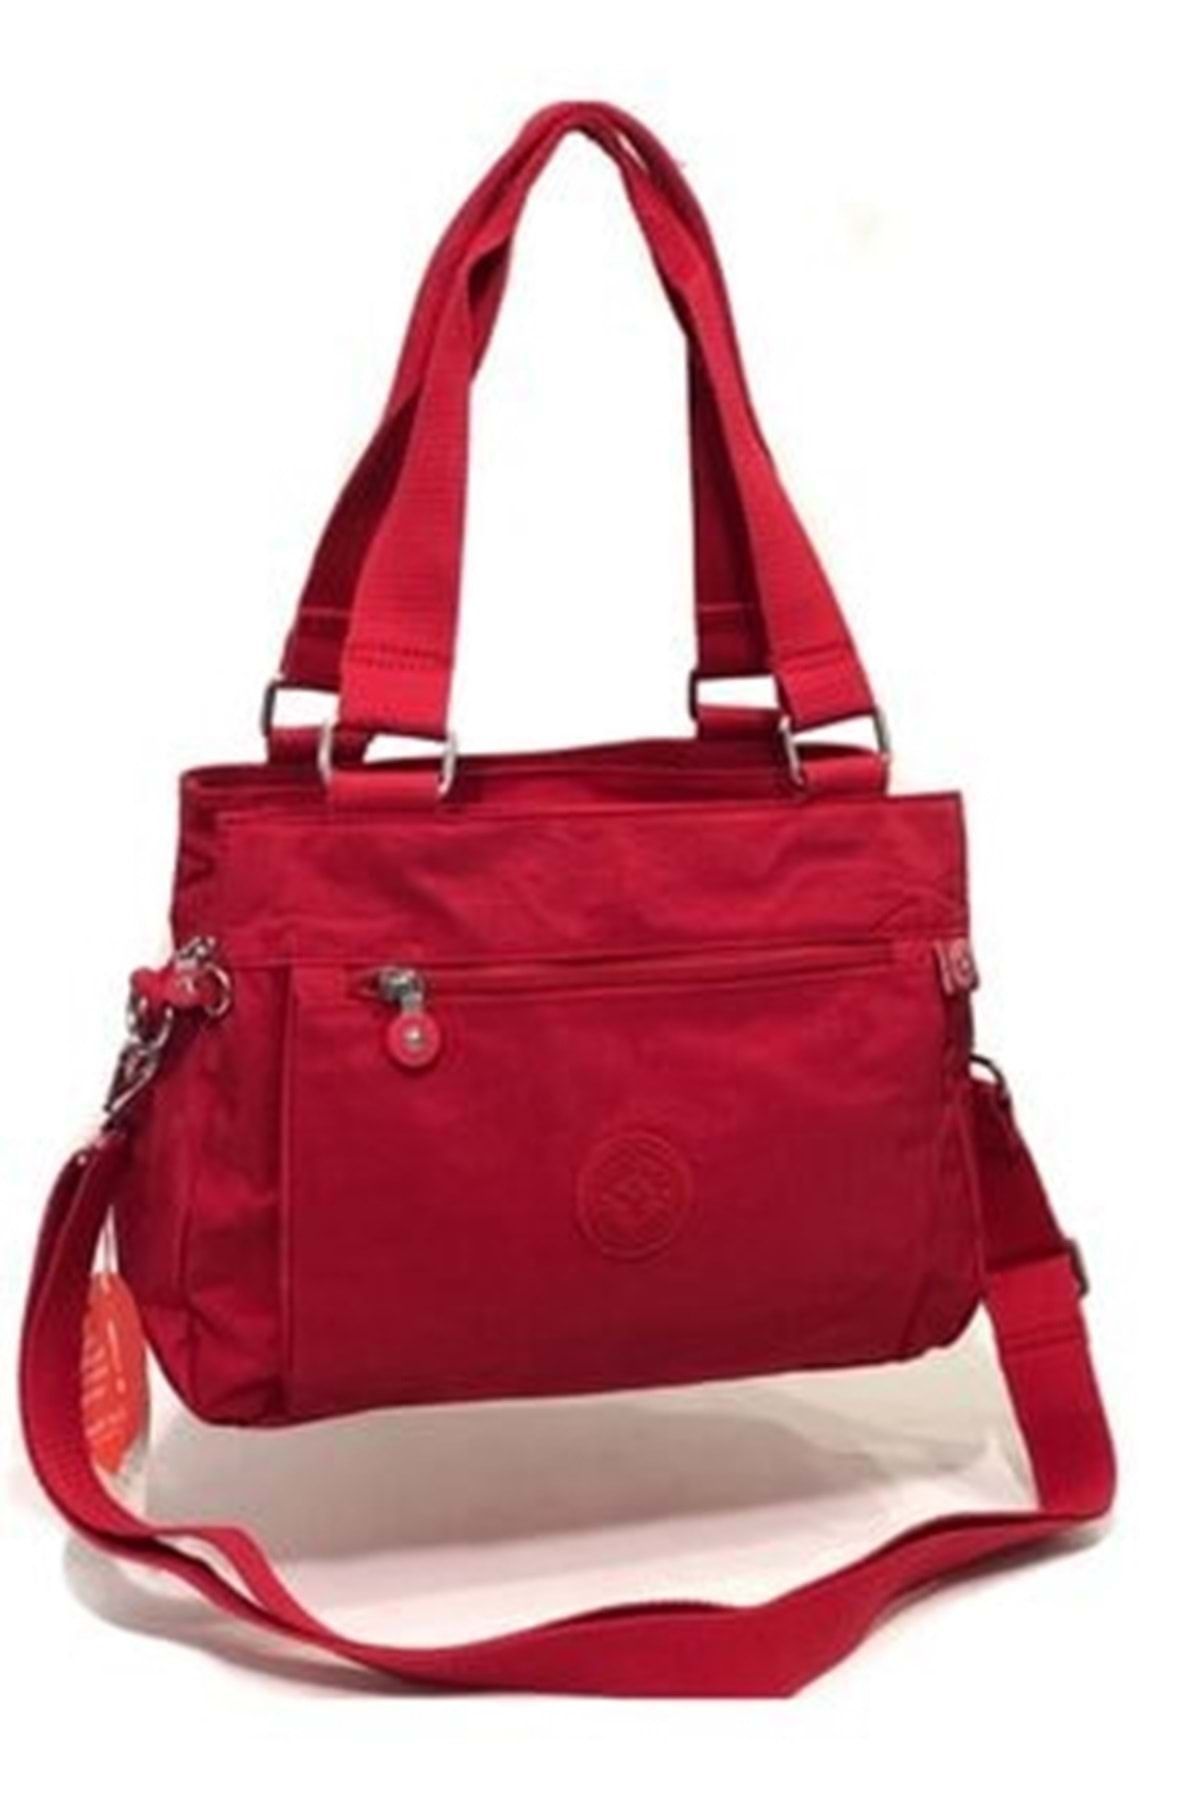 Smart Bags Kadın Kırmızı Orta Boy Çanta 1125